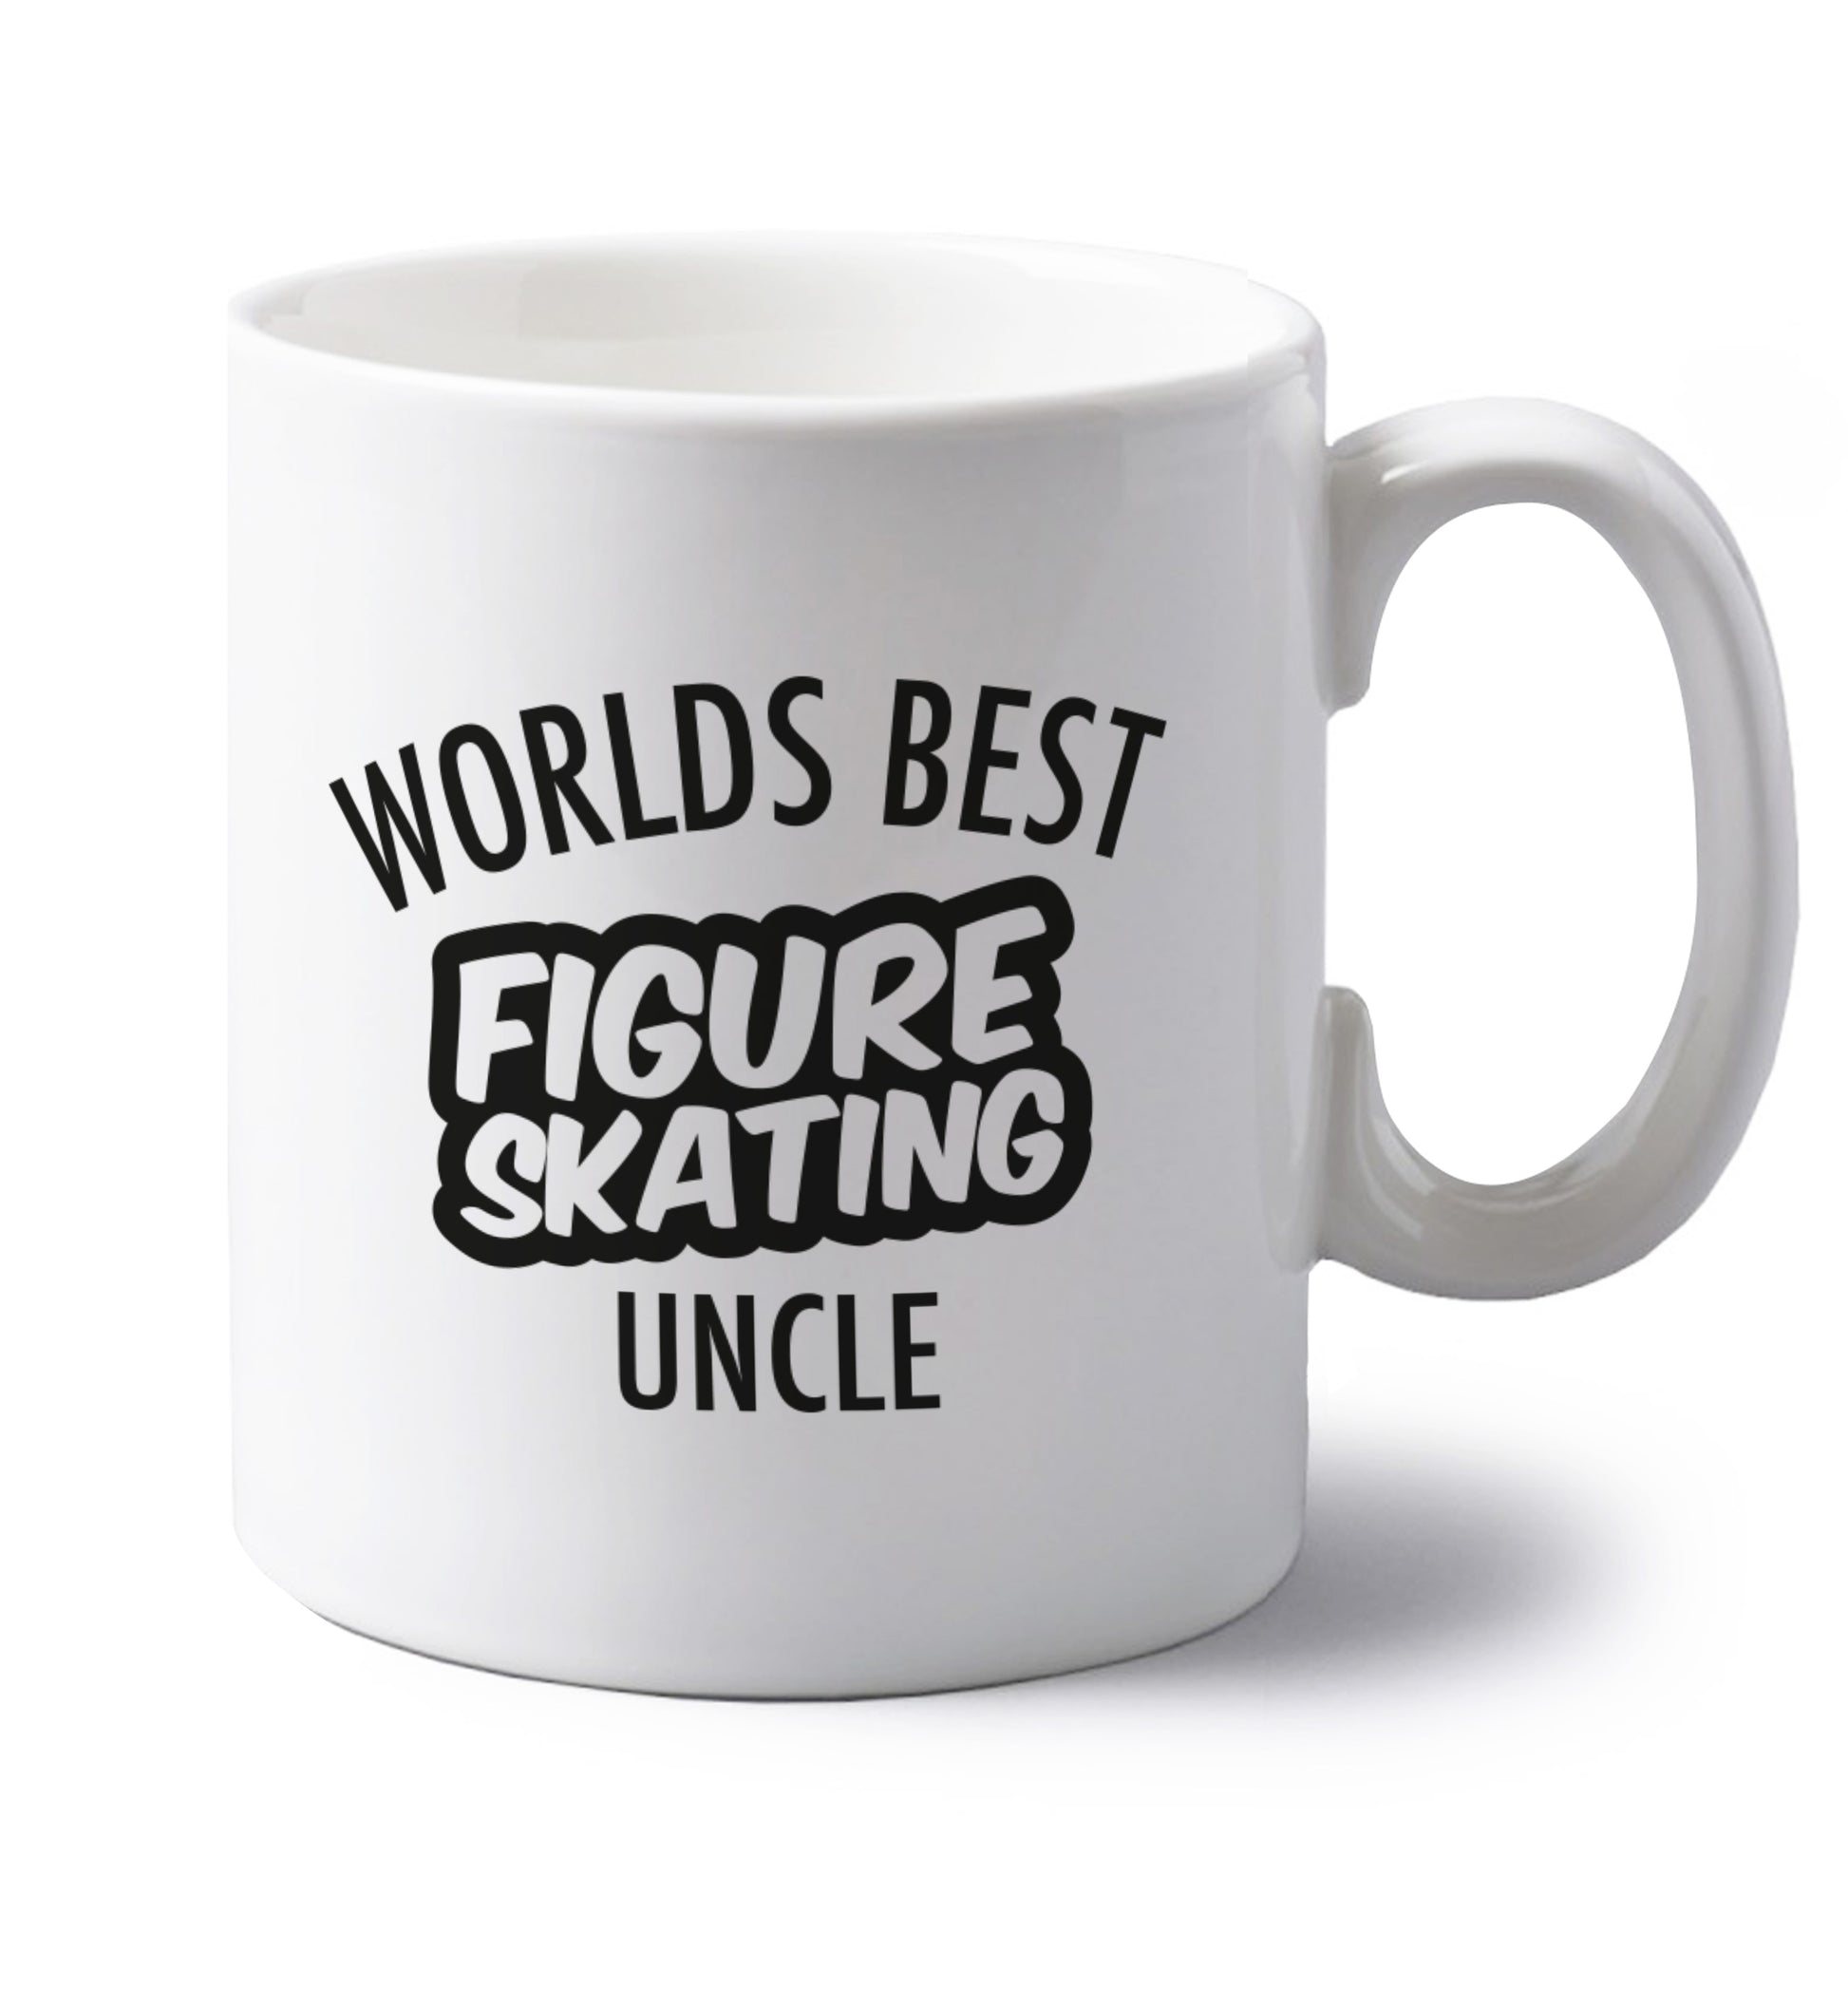 Worlds best figure skating uncle left handed white ceramic mug 